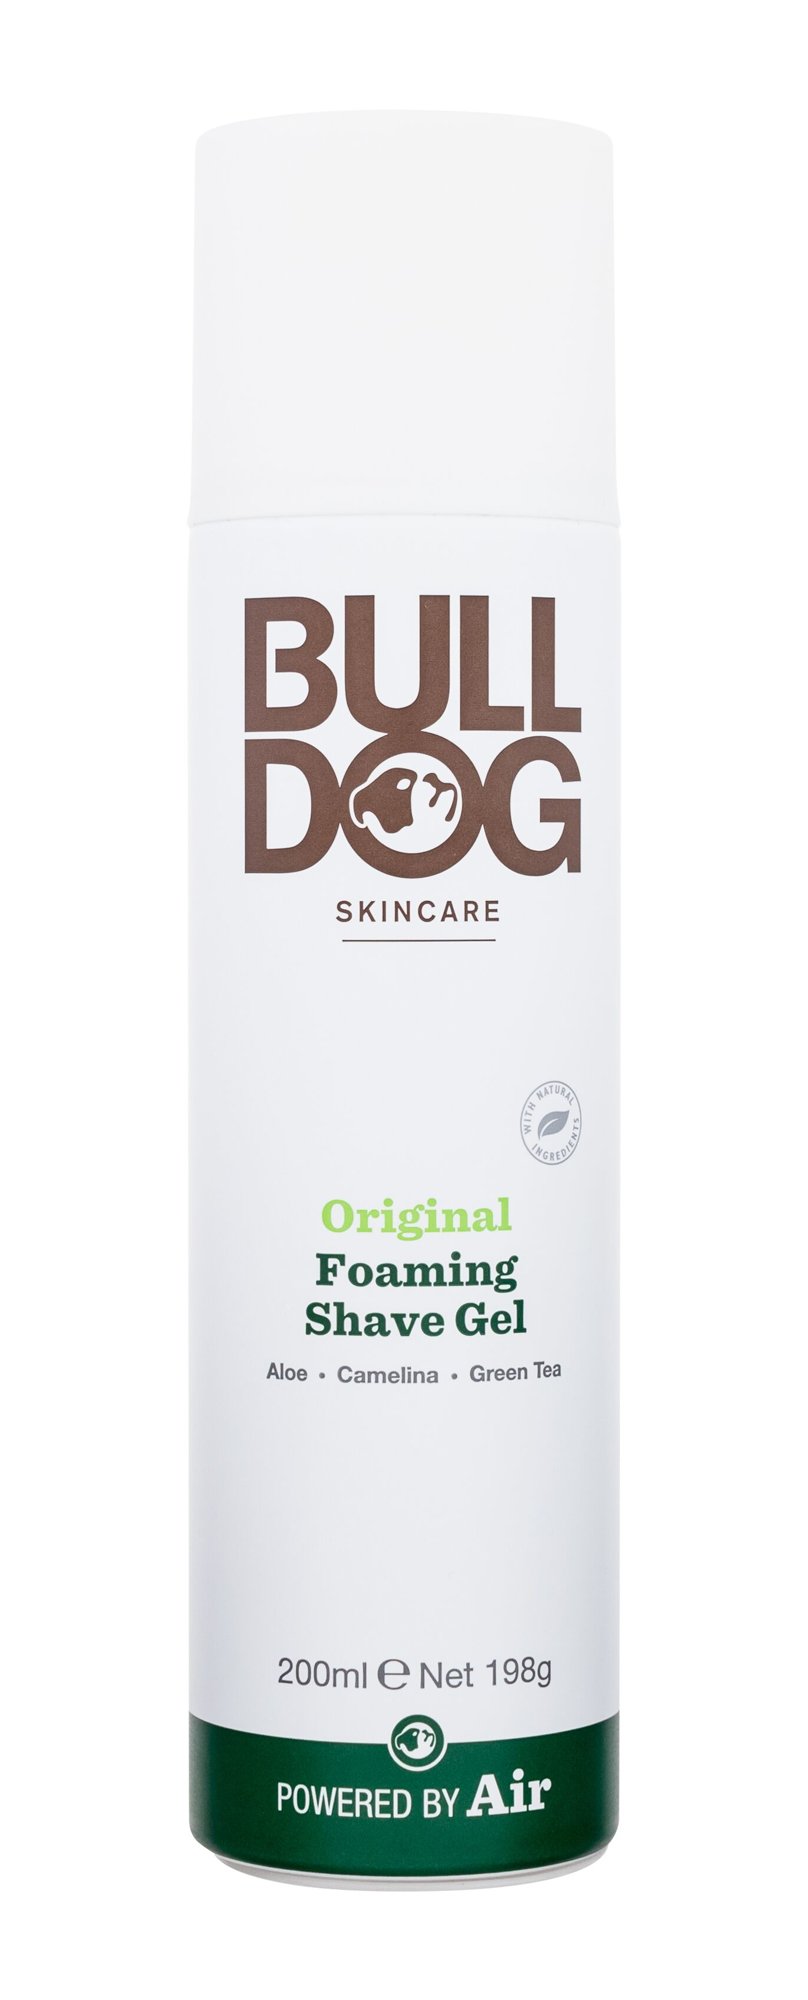 Bulldog Original Foaming Shave Gel skutimosi gelis